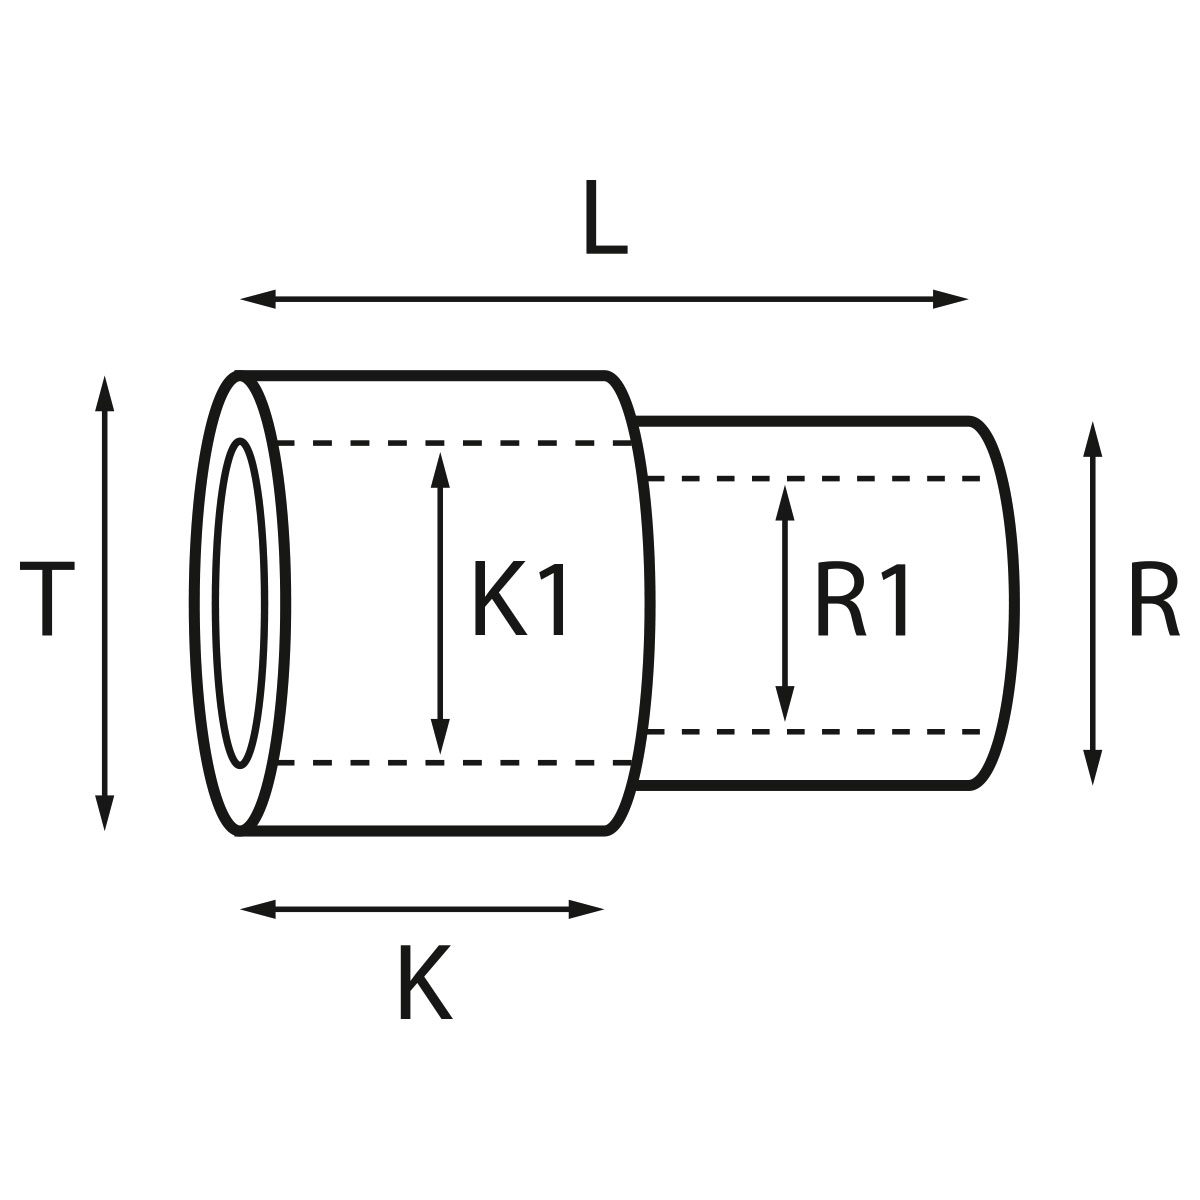 Gehäusetube Typ AS 13827, Tubus Ø 2,5 mm, Gesamtlänge 4,75 mm, für wasserdichte Kronen